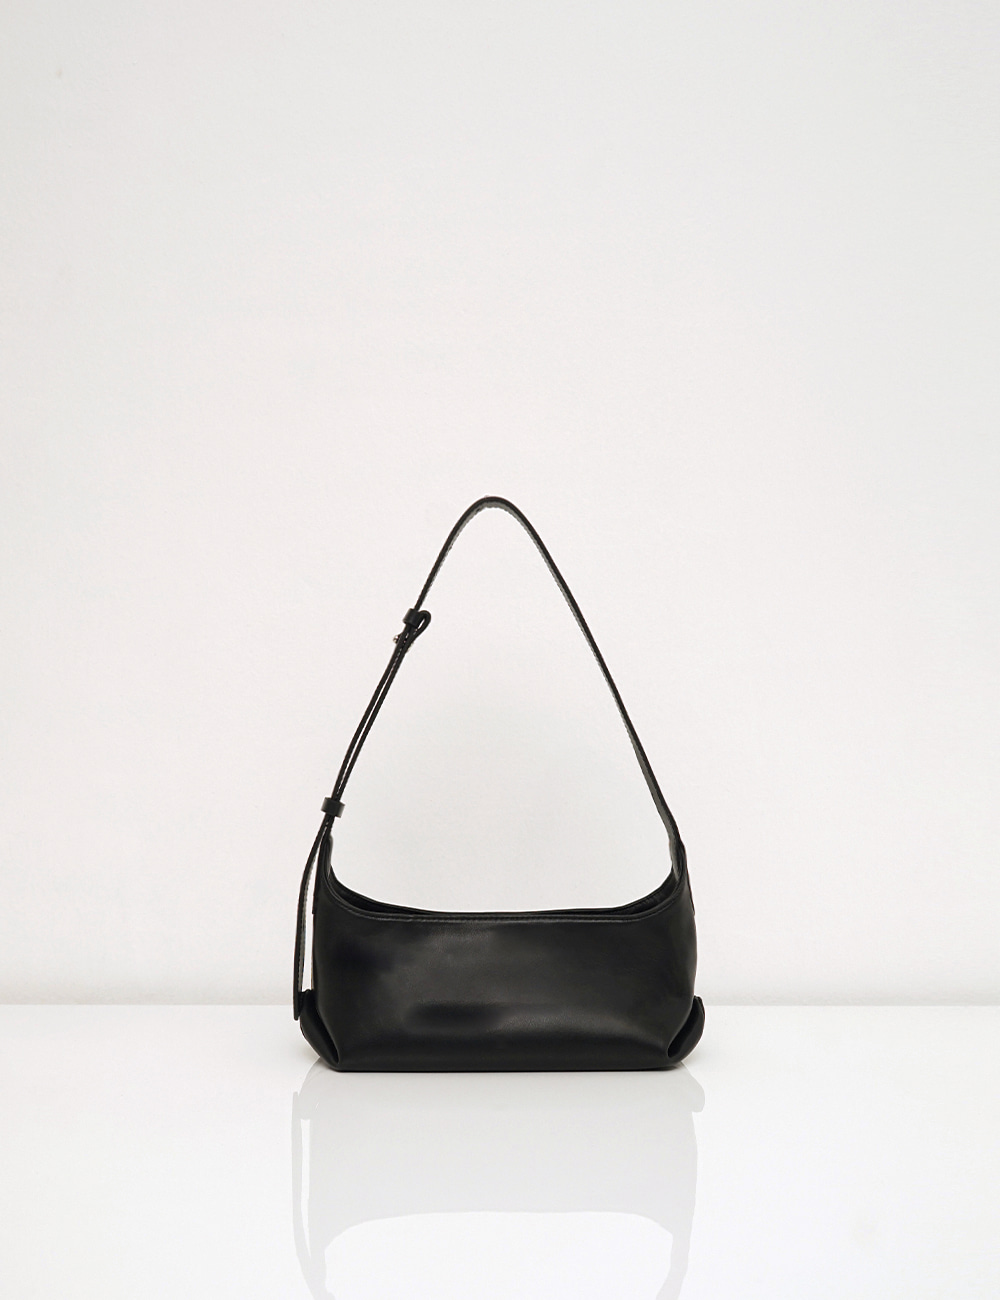 Bote bag / black